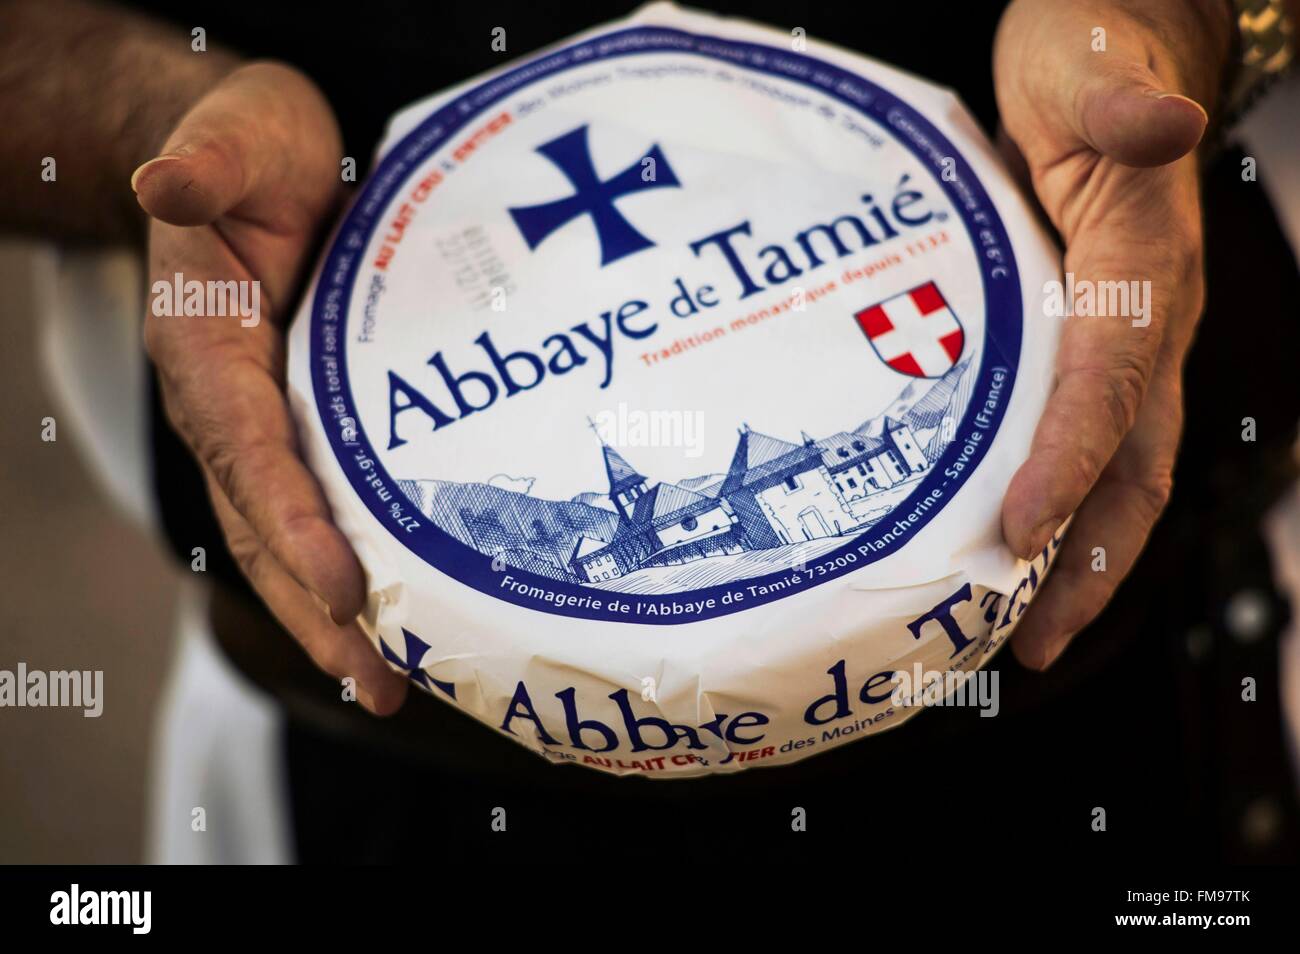 Francia, Savoie, Plancherine Bauges, cordillera, monasterio cisterciense de Notre Dame de Tamie, queso del monasterio Foto de stock